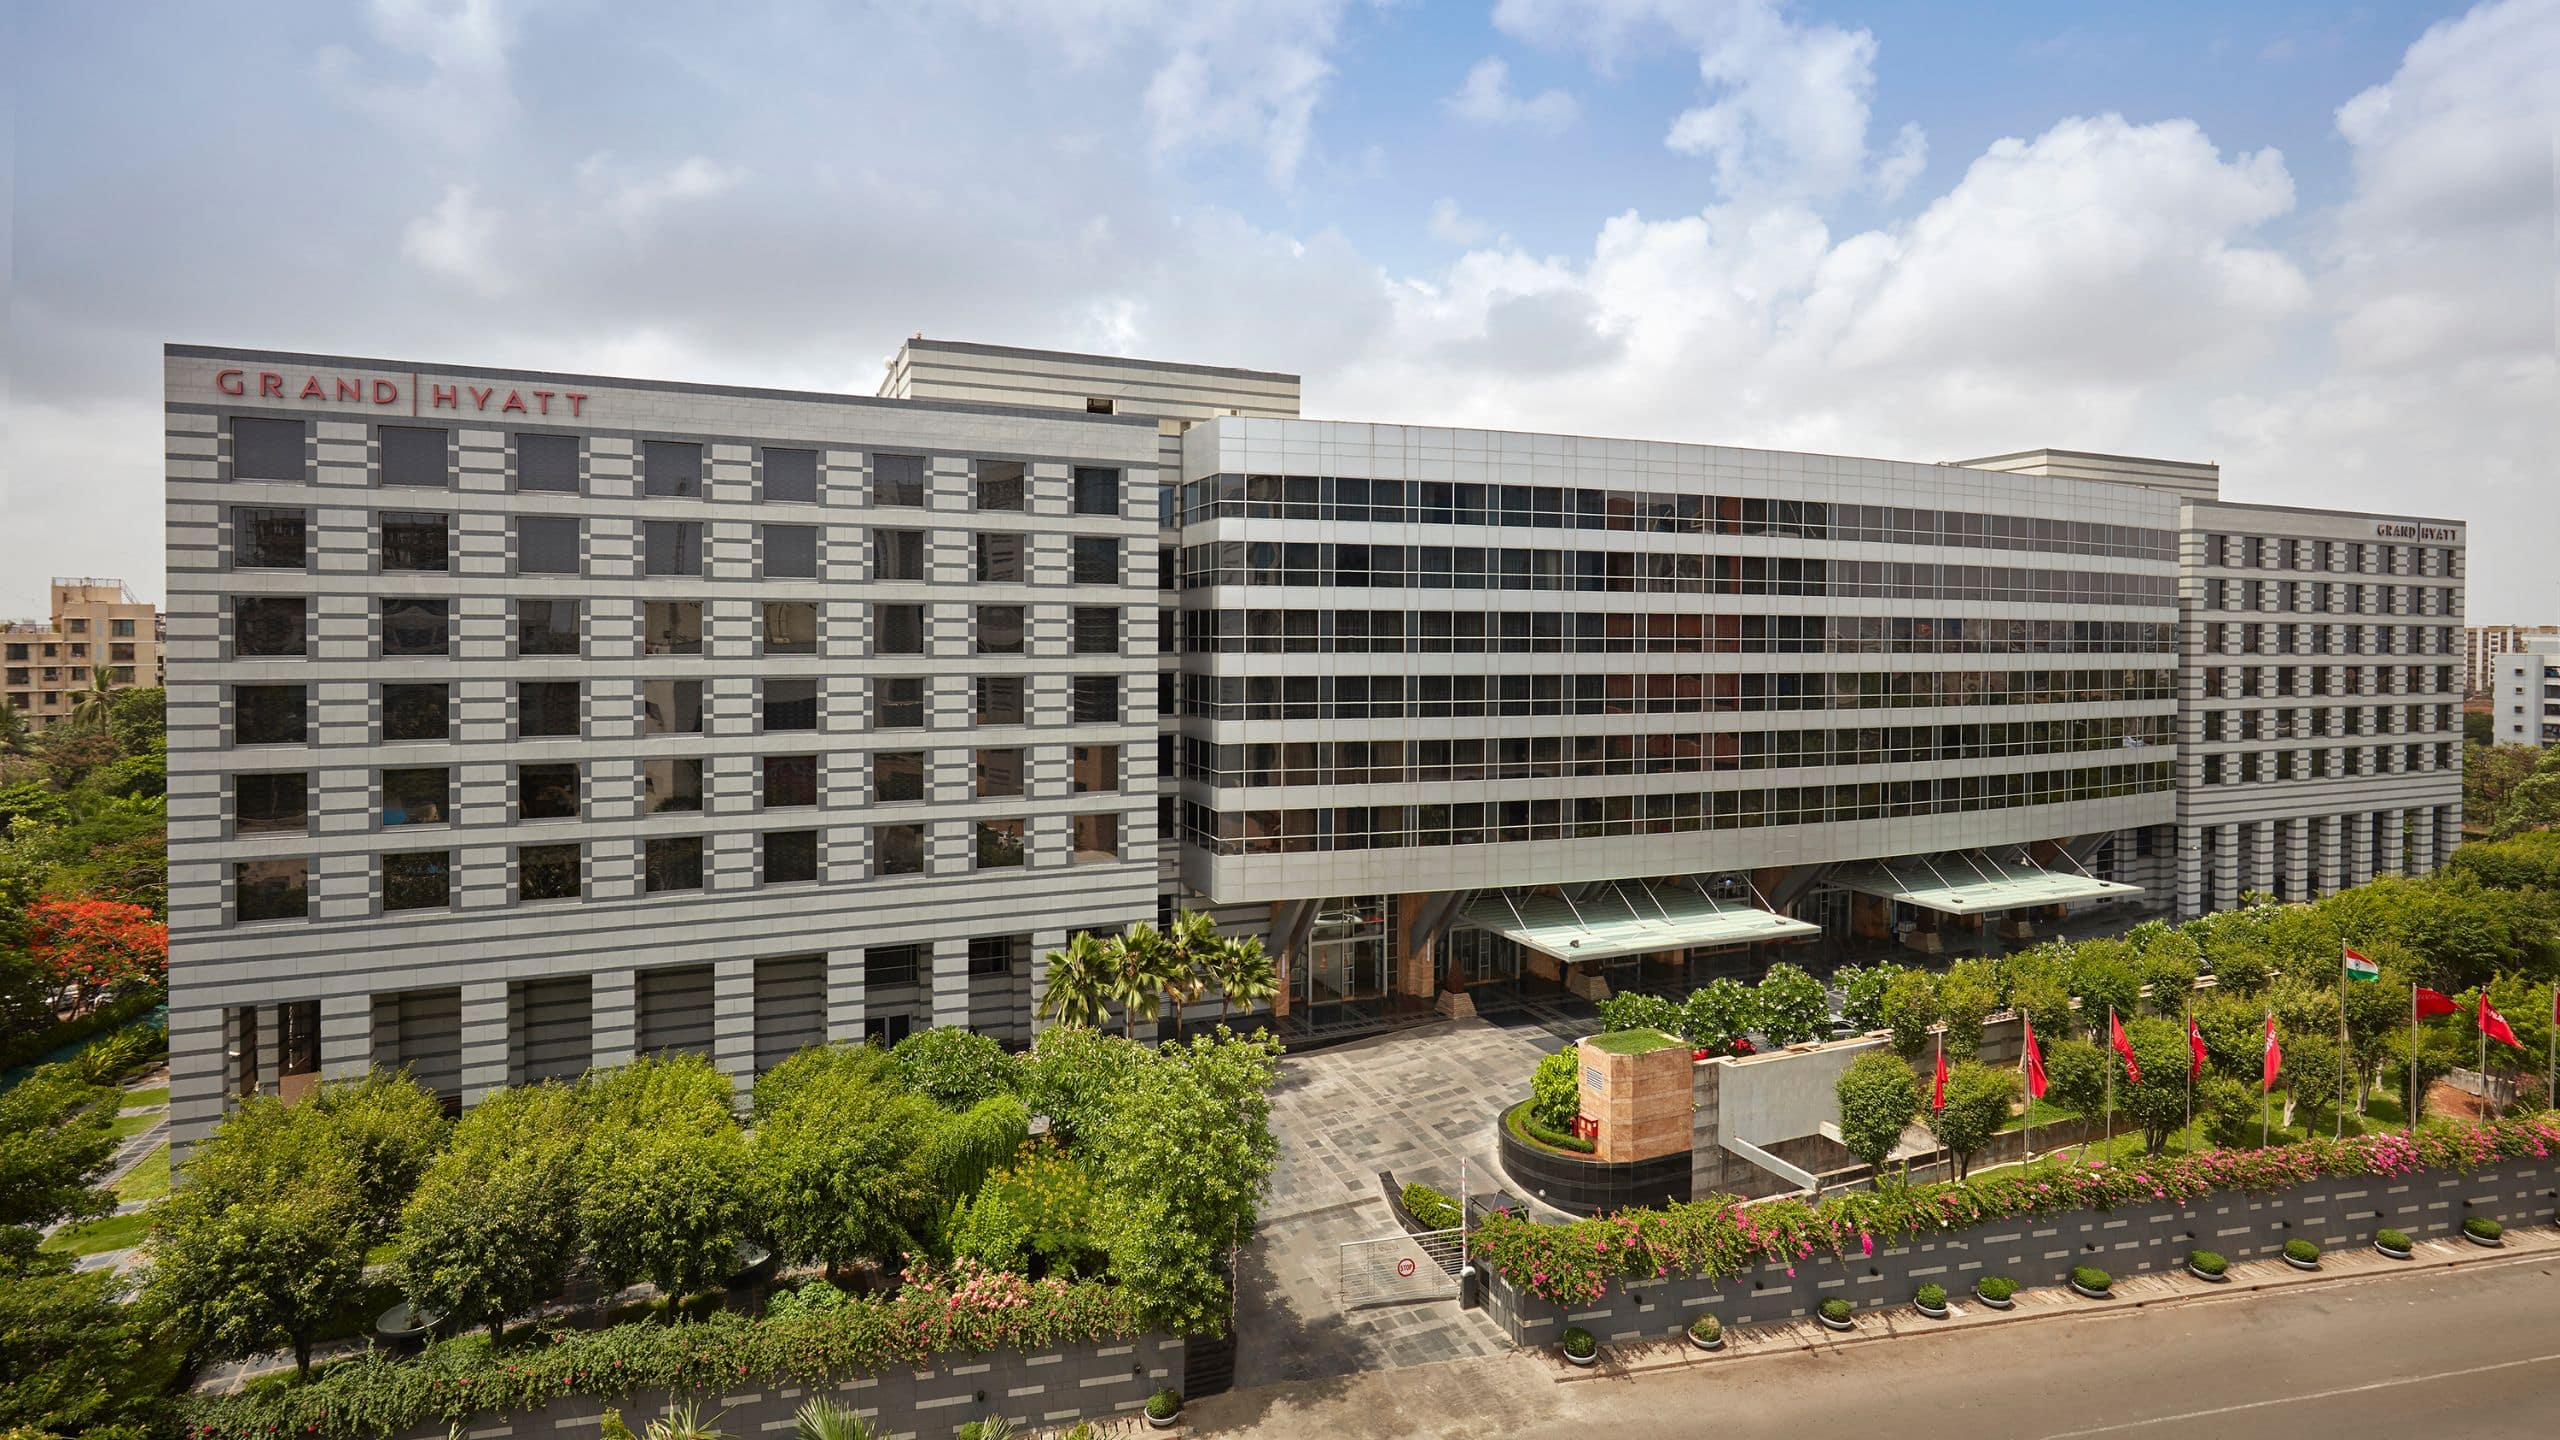 5 Start Hotels In Bkc Mumbai Grand Hyatt Mumbai Hotel - 